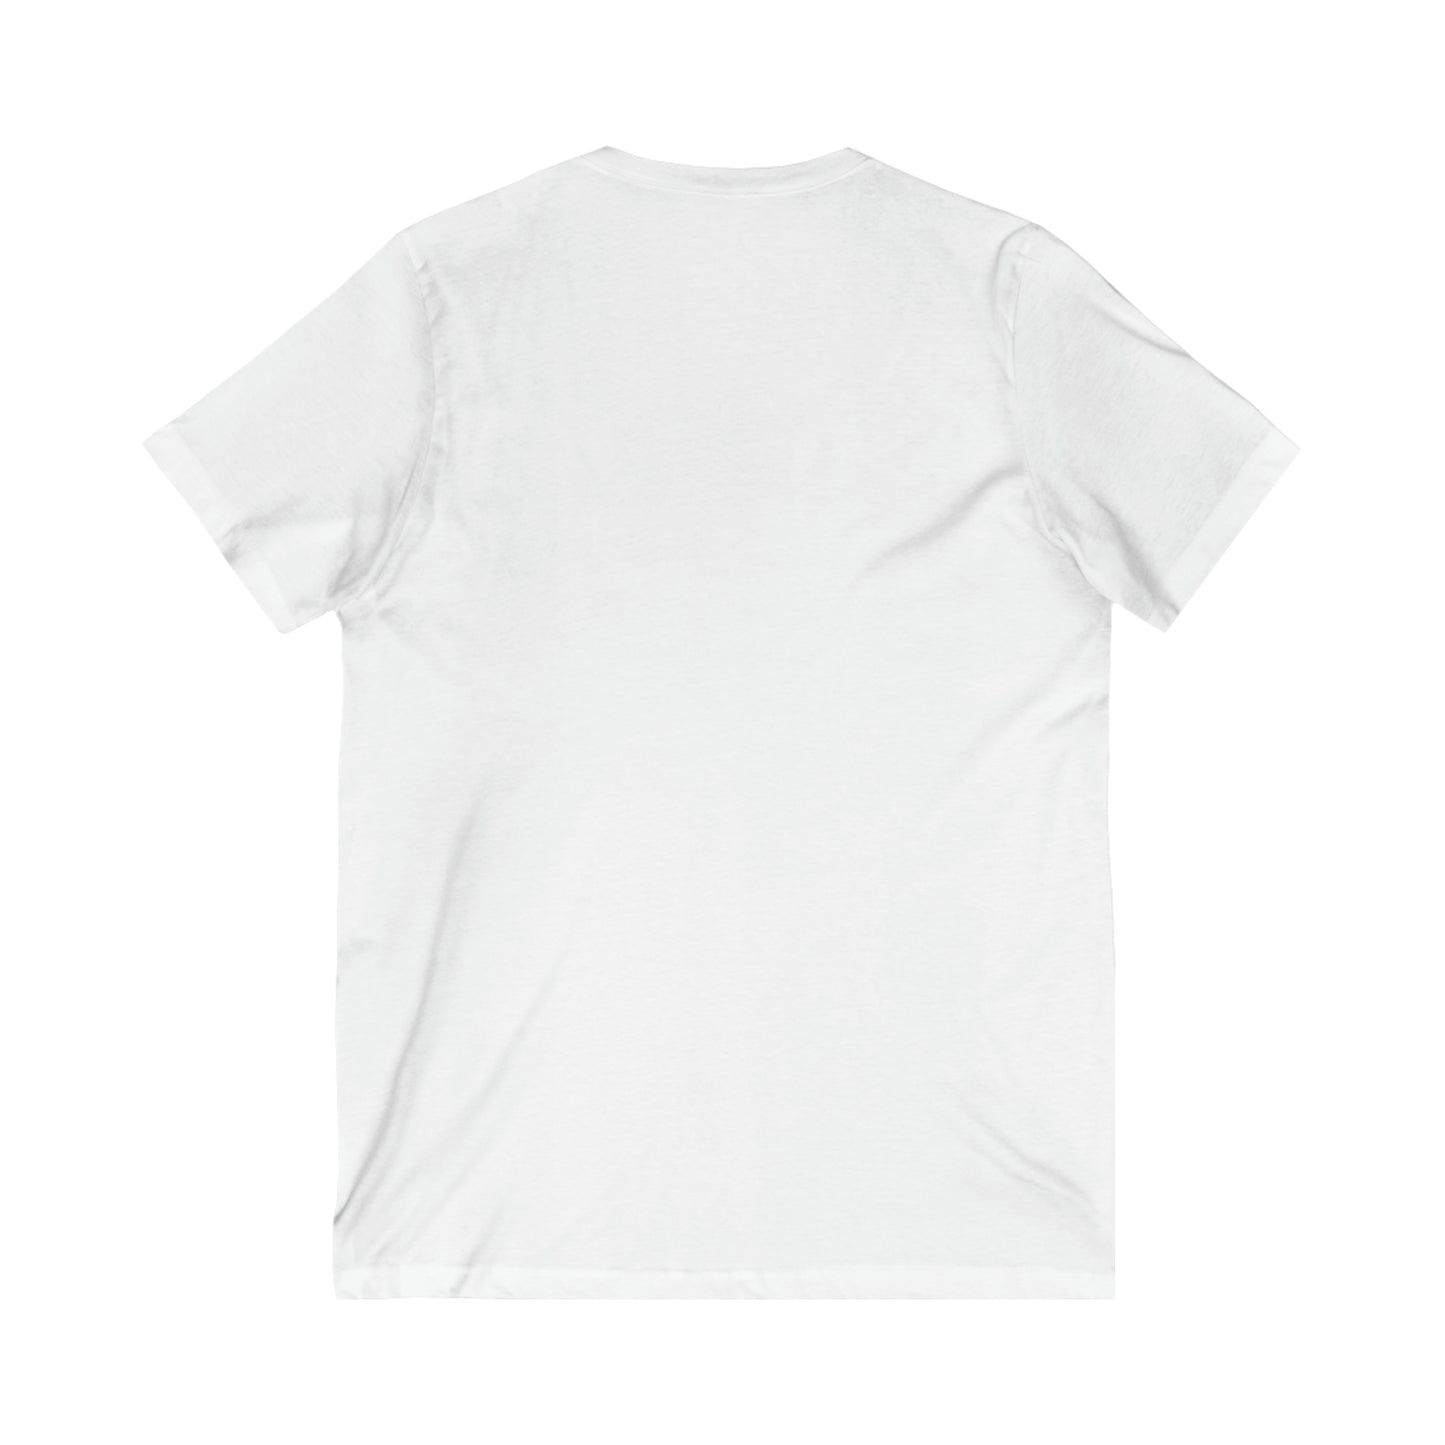 T-shirt. Gin's Den Art Unisex Jersey Short Sleeve V-Neck Tee